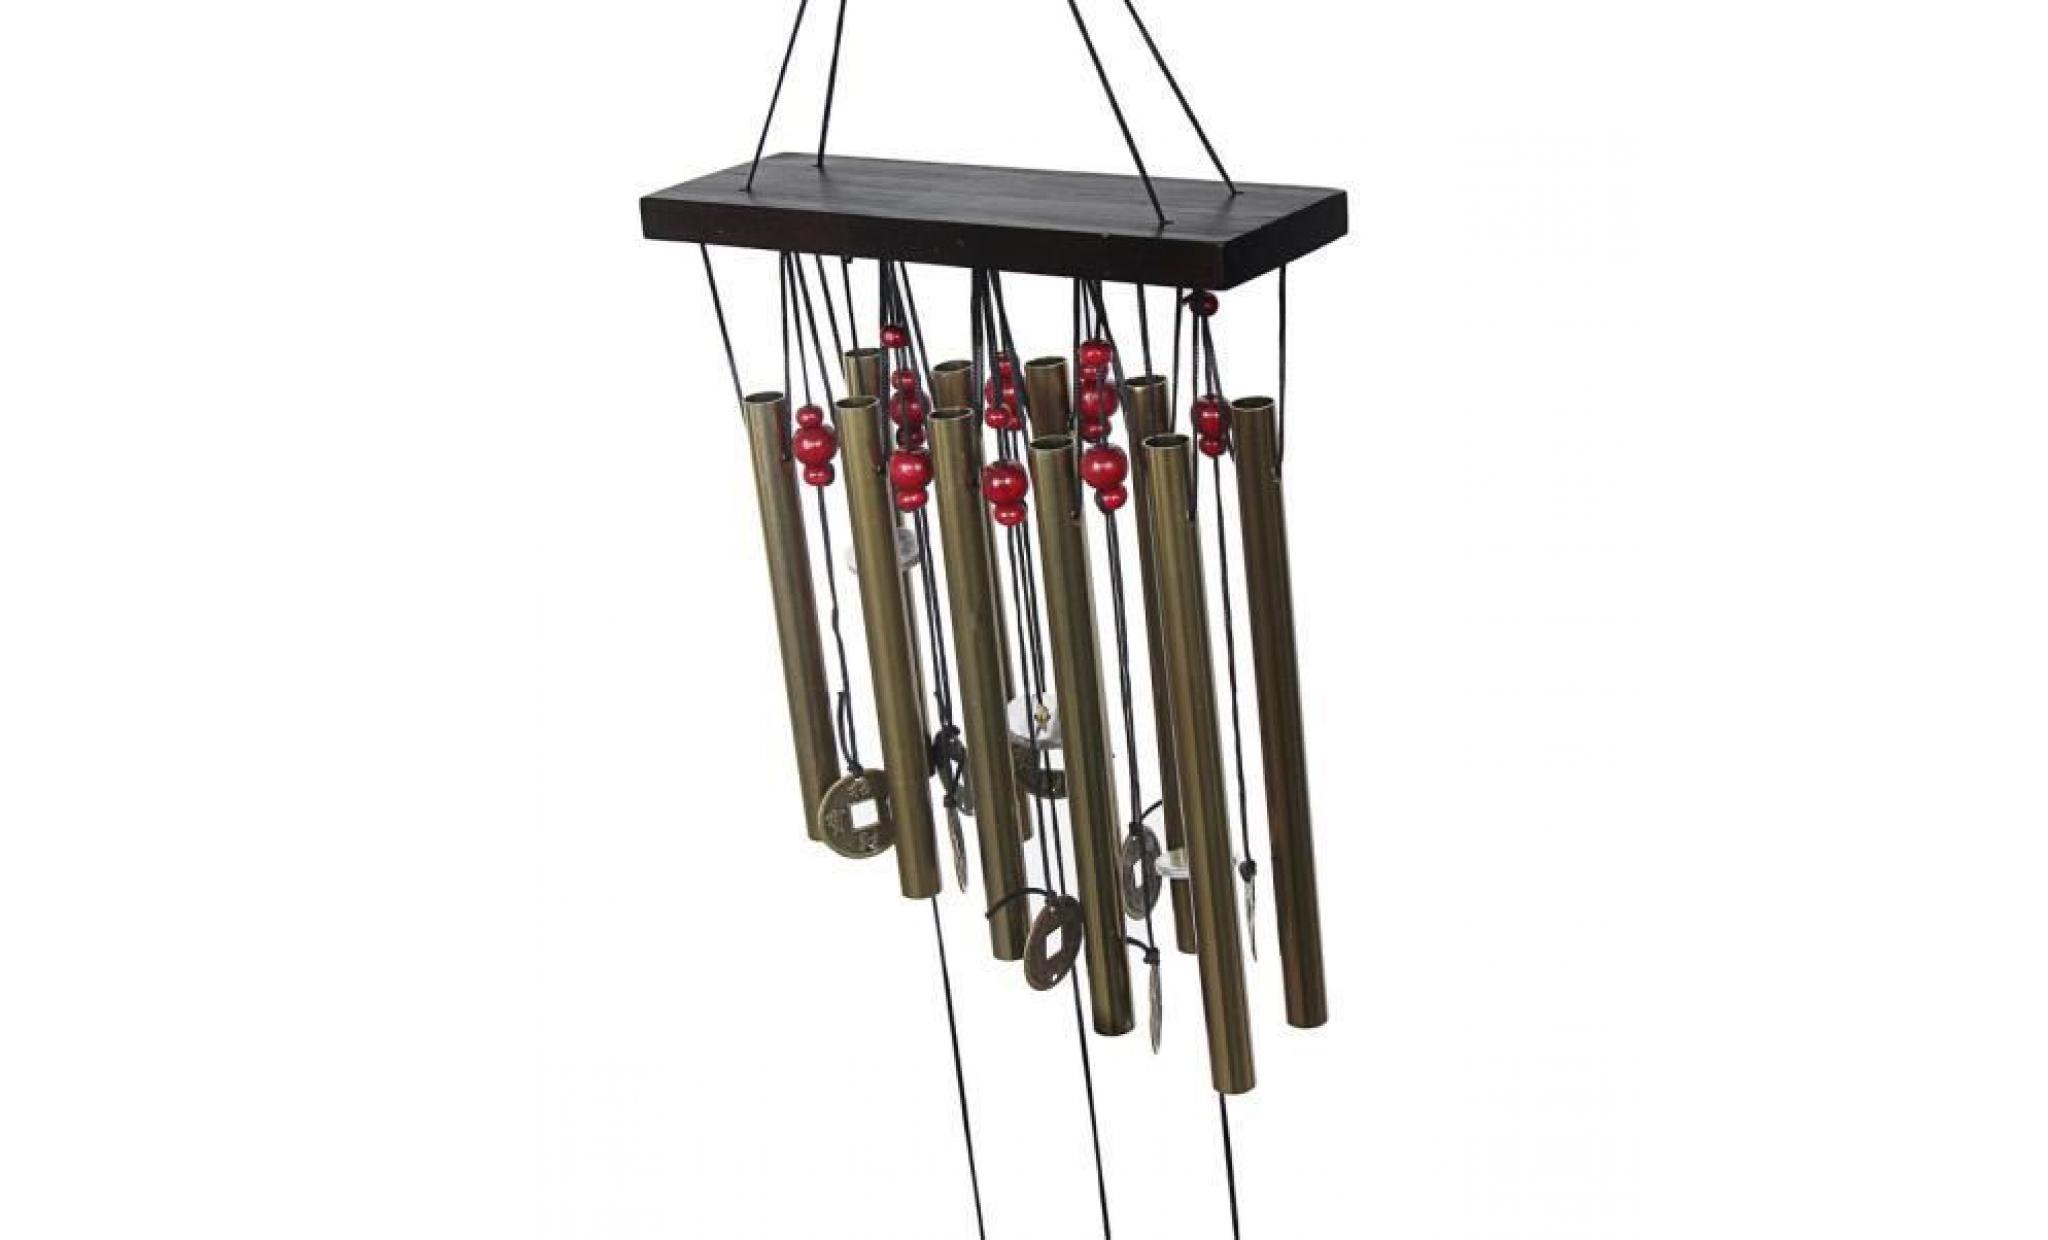 incroyable 10 tubes bois chapelle eglise clochons carillons de vent decor wh@cff60621410 pas cher